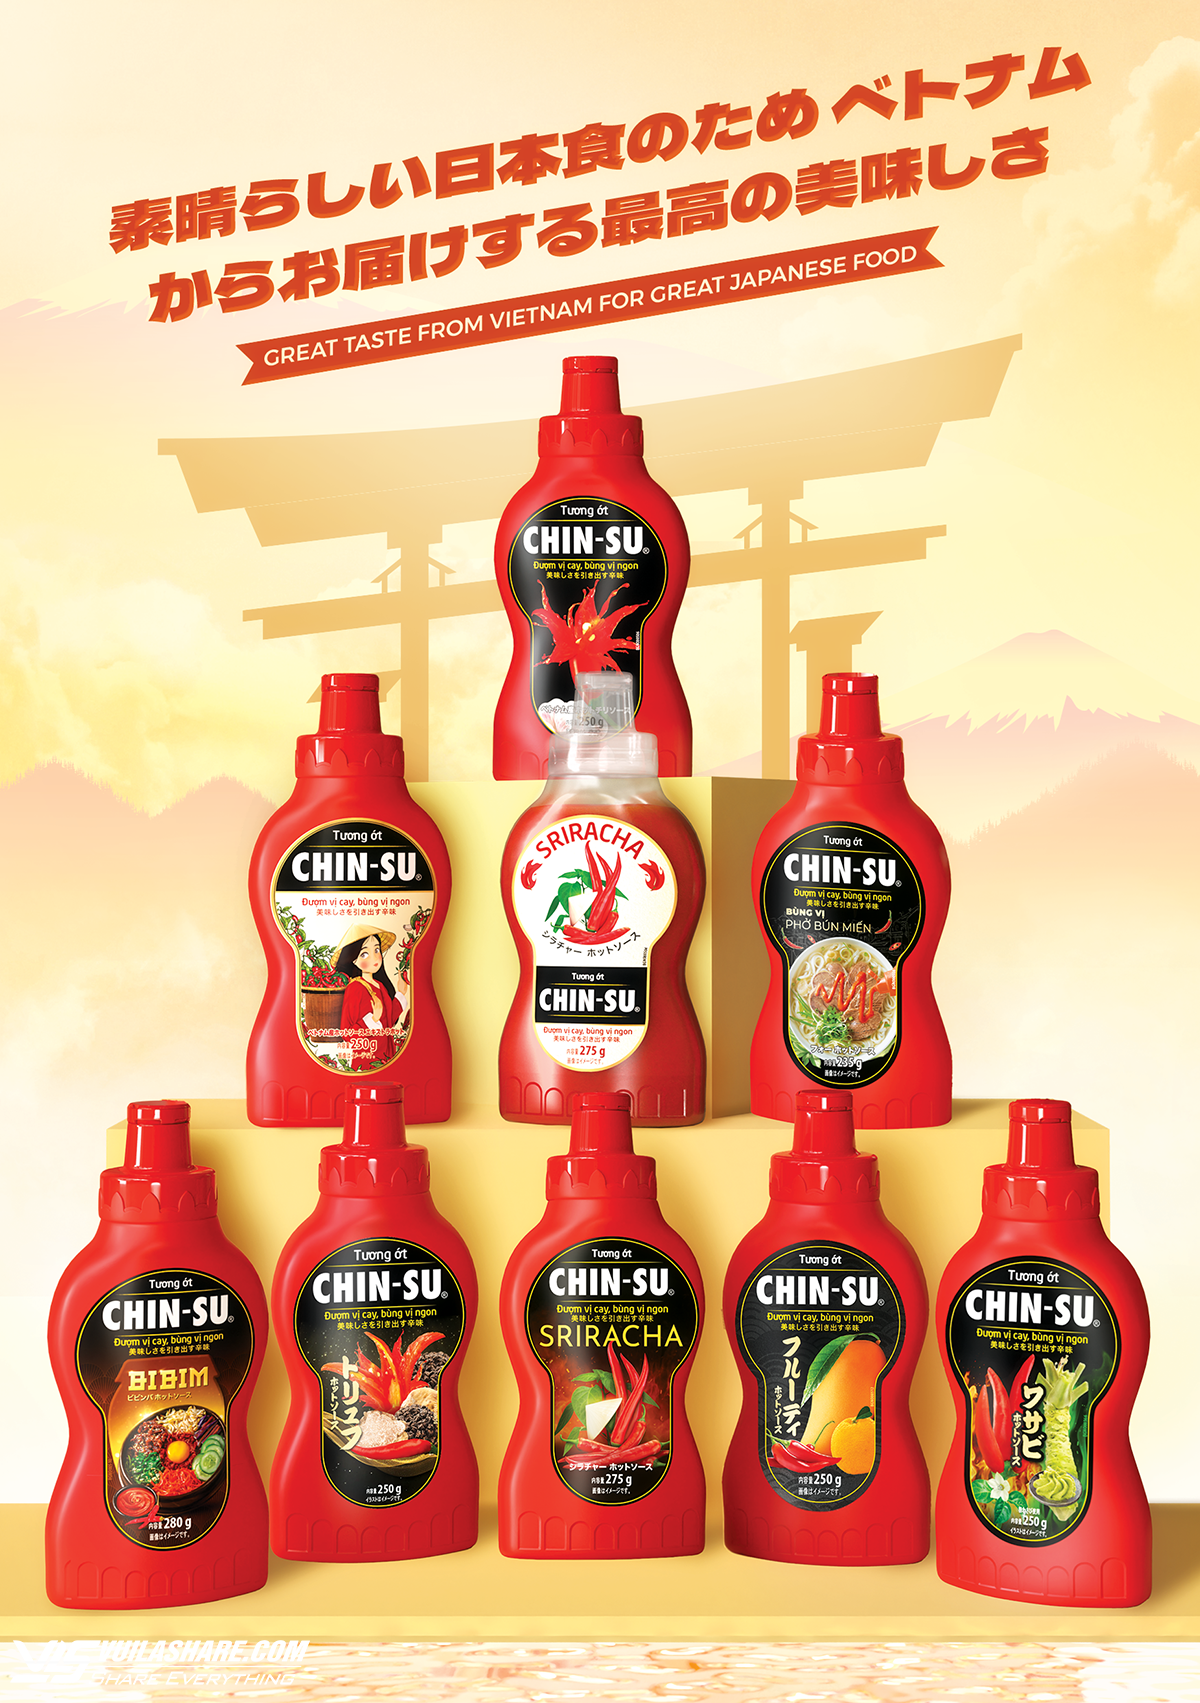 Sản phẩm tương ớt Chin-su được bày trí đẹp mắt tại sự kiện Japan Foodex